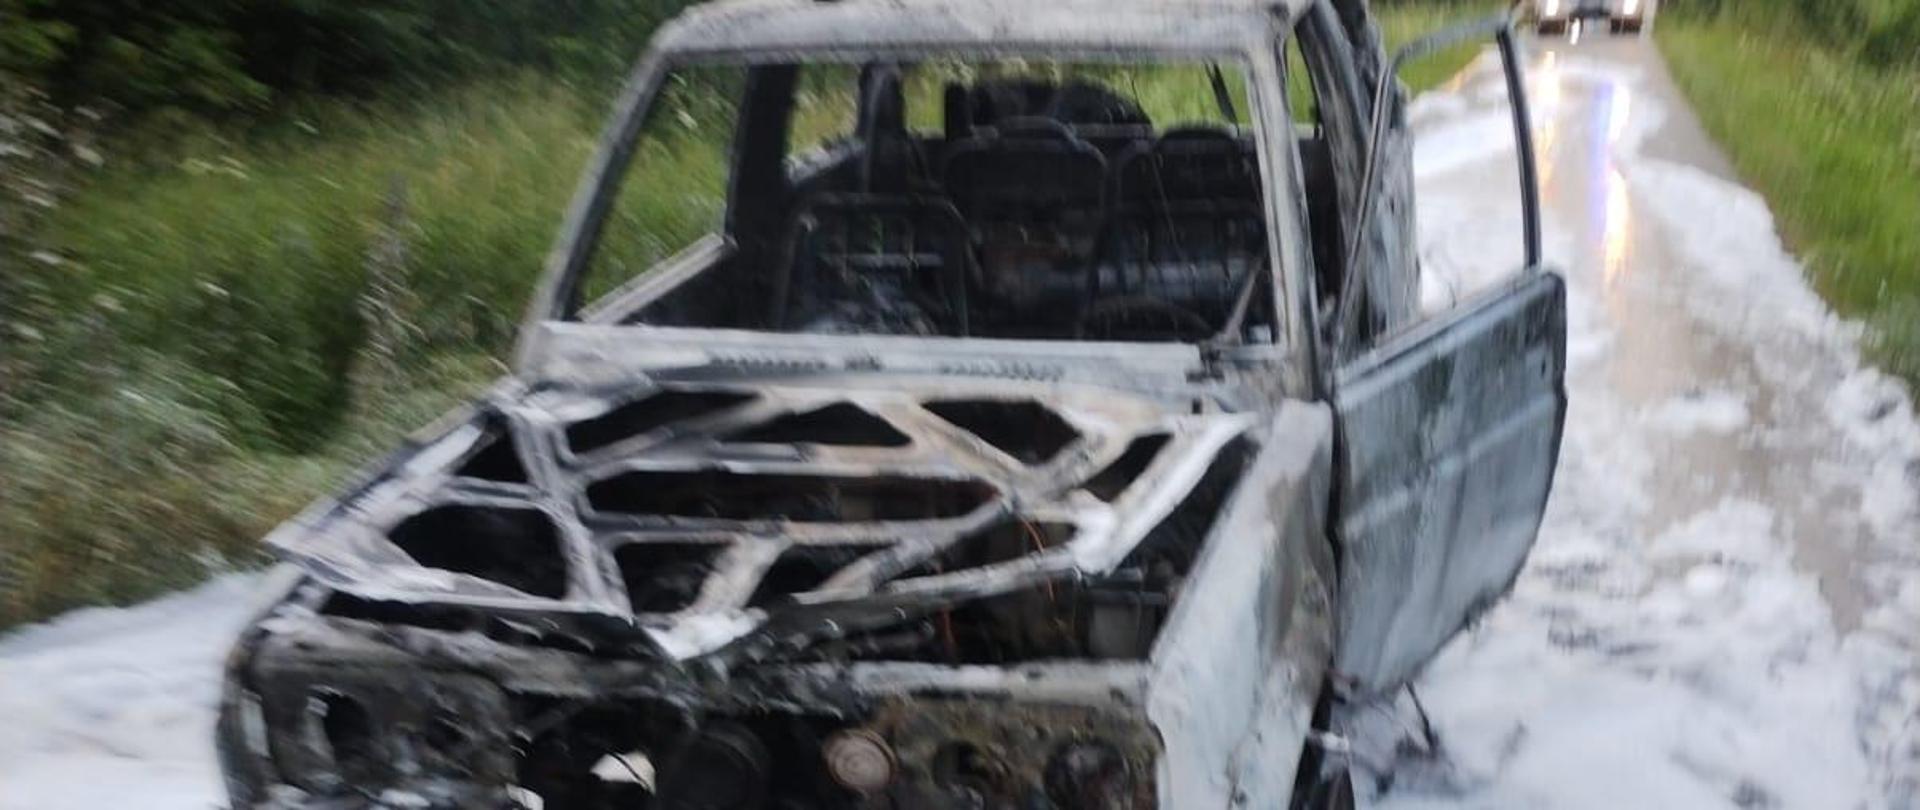 Spalony samochód terenowy pokryty pianą